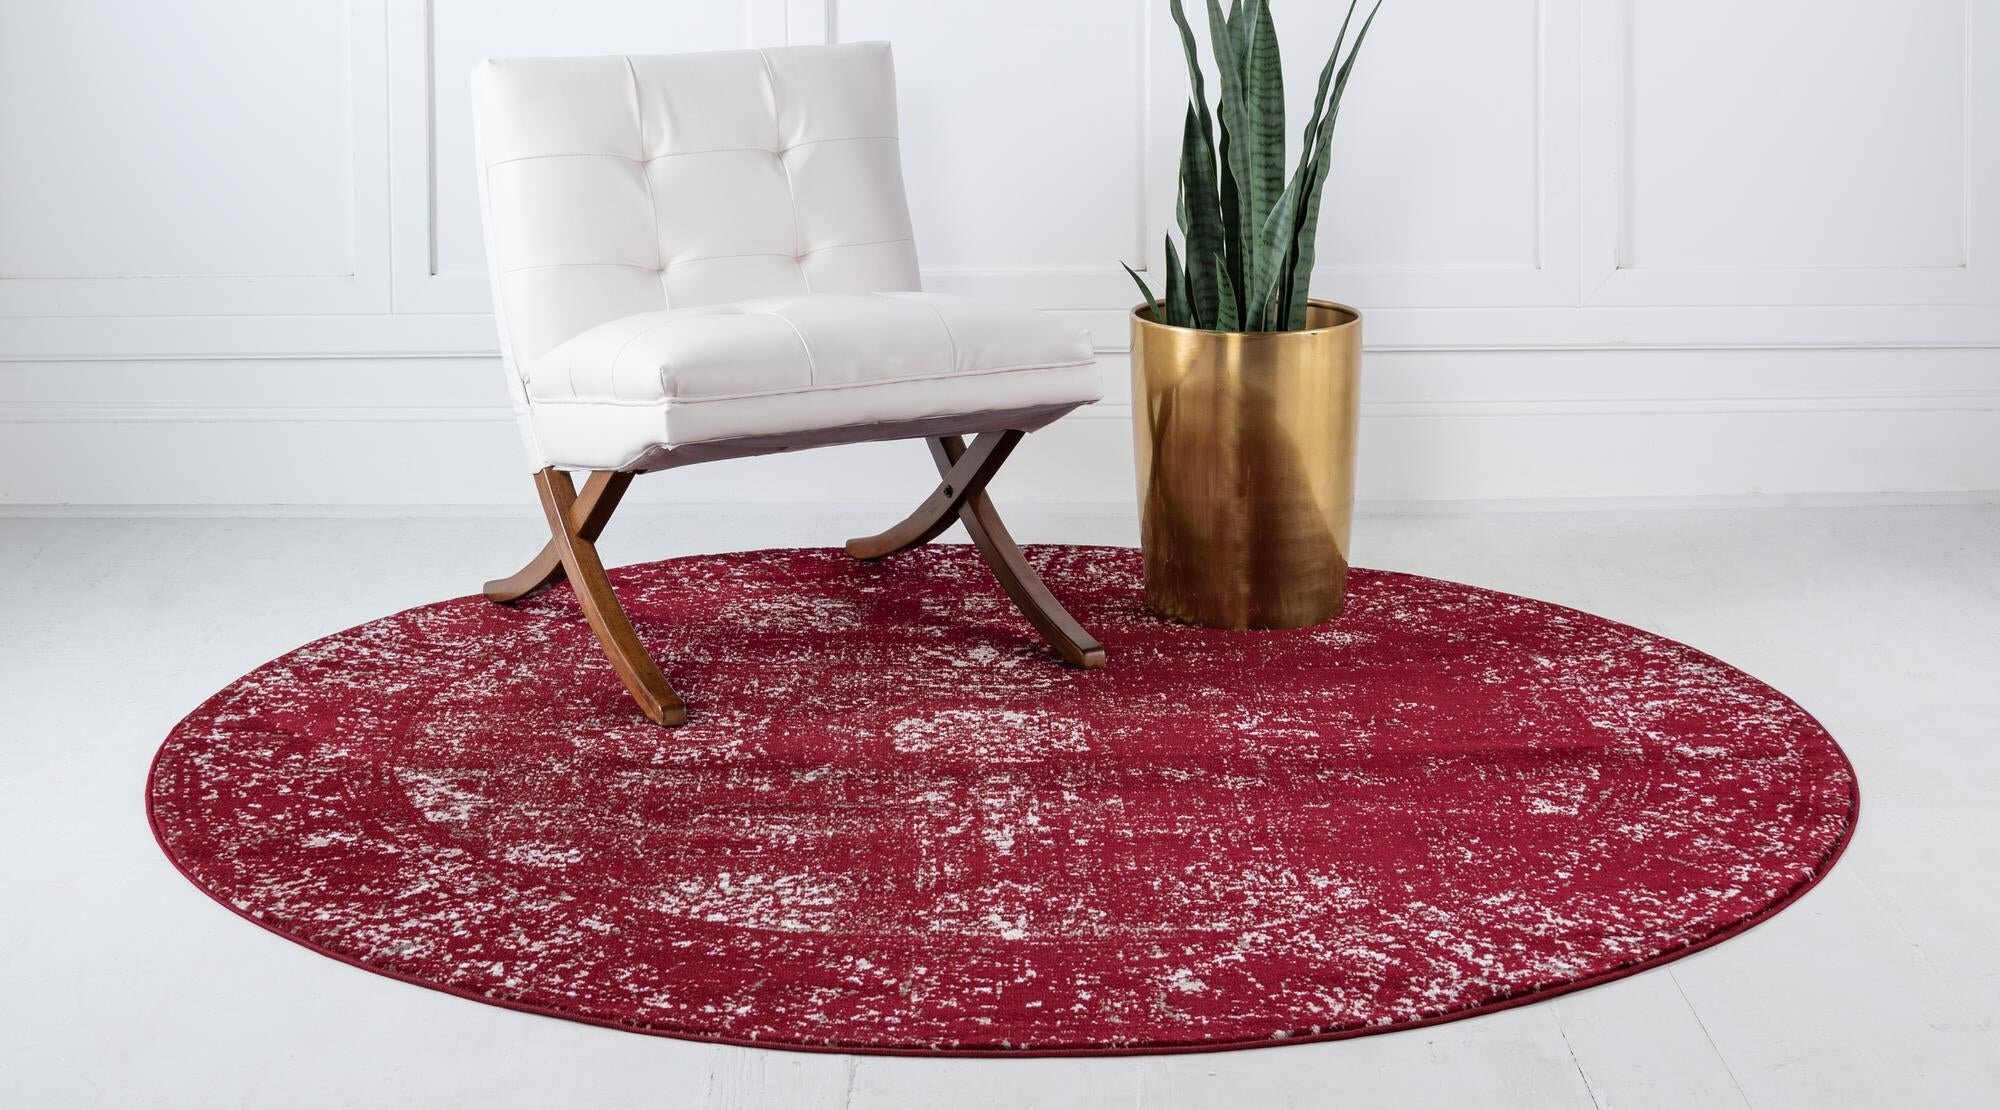 Red Excavator Area Rugs Round Bedroom Carpets Indoor Outdoor Large for Hallway Floor Mats 92cm 